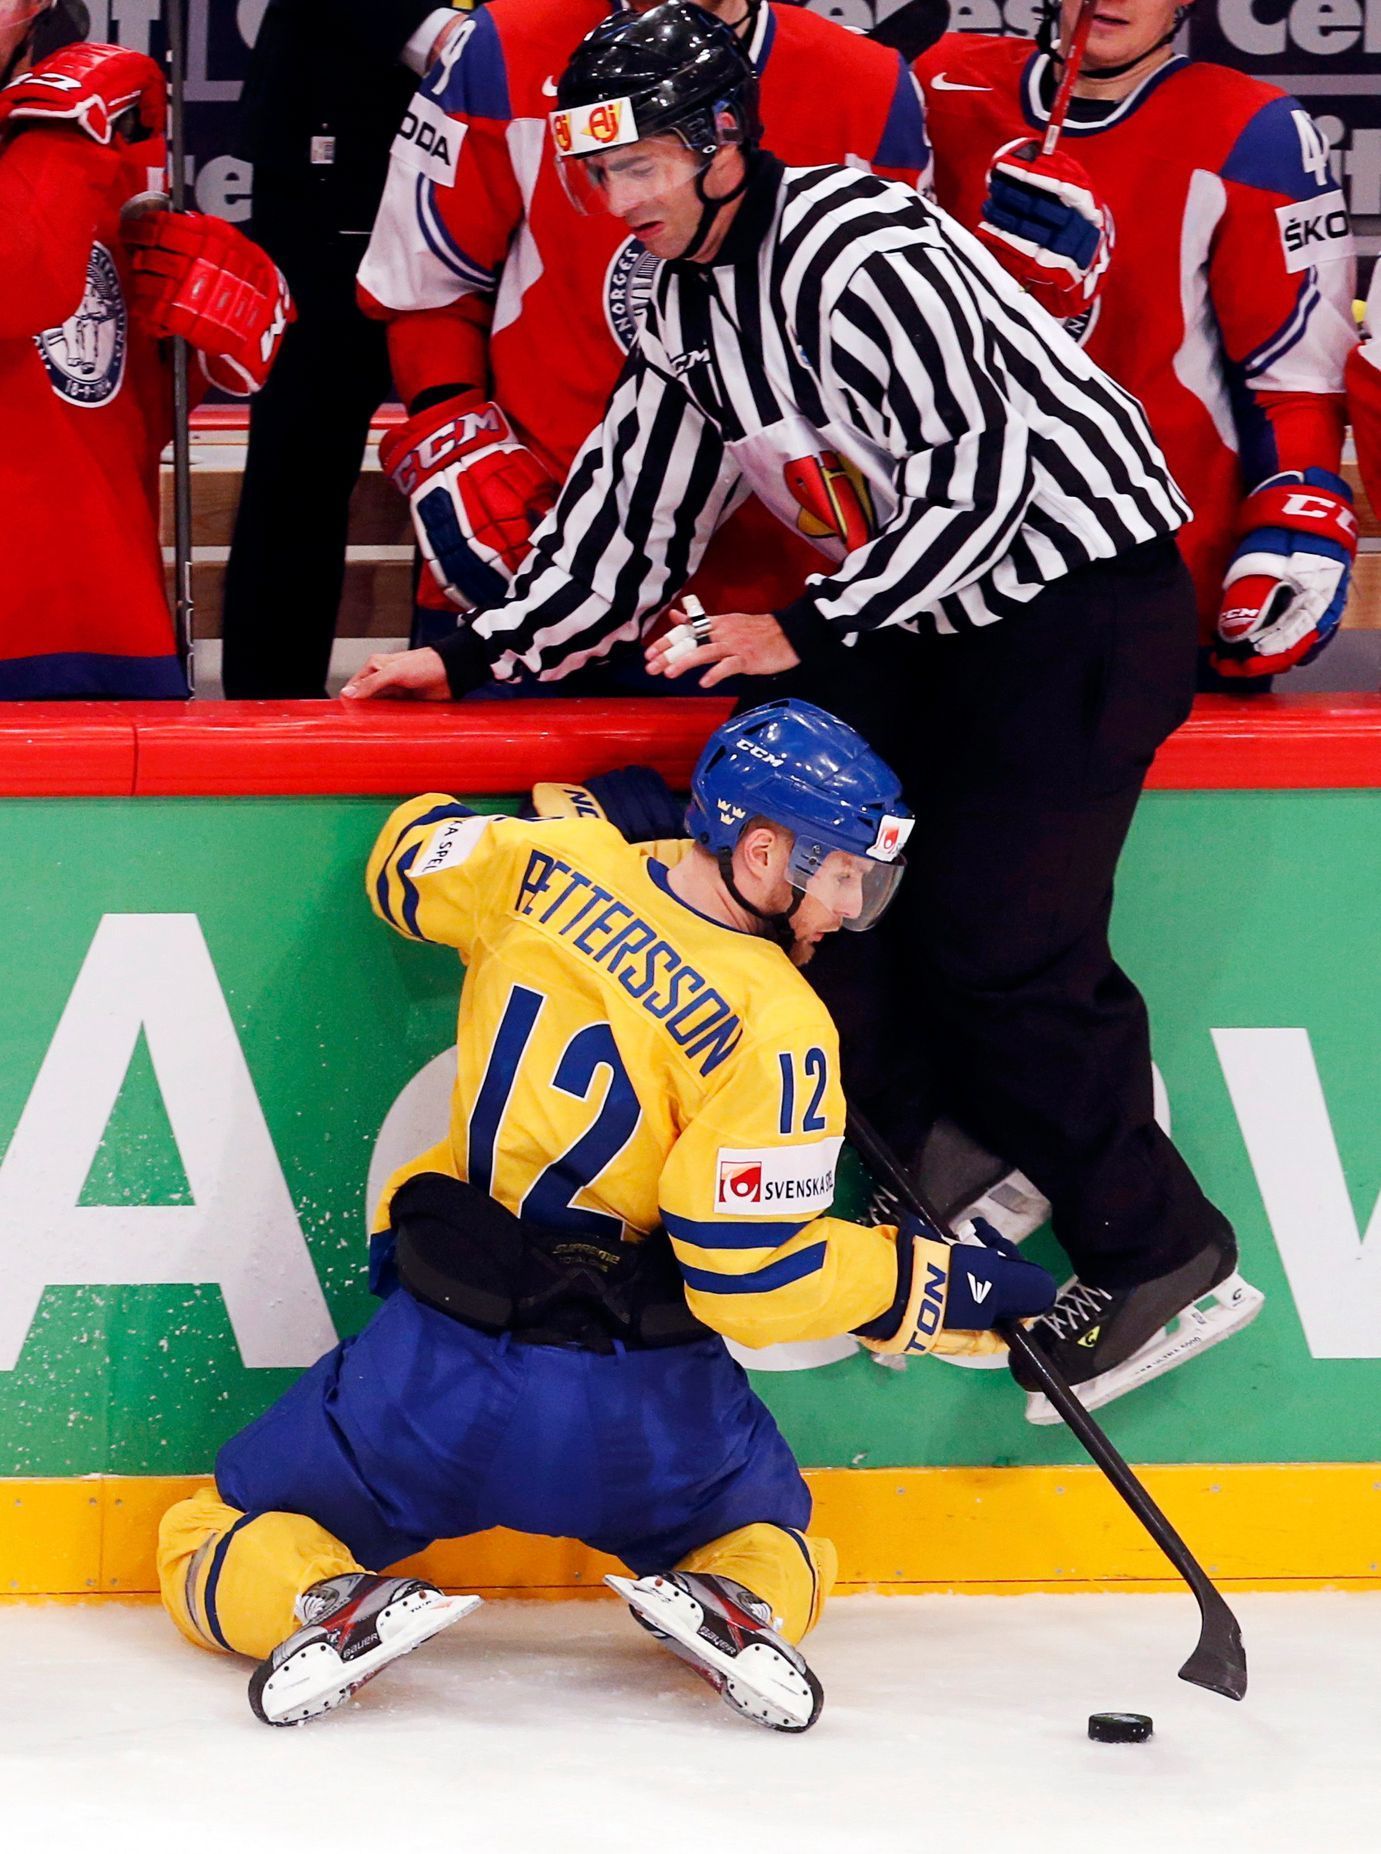 Hokej, MS 2013: Švédsko - Norsko: Fredrik Pettersson